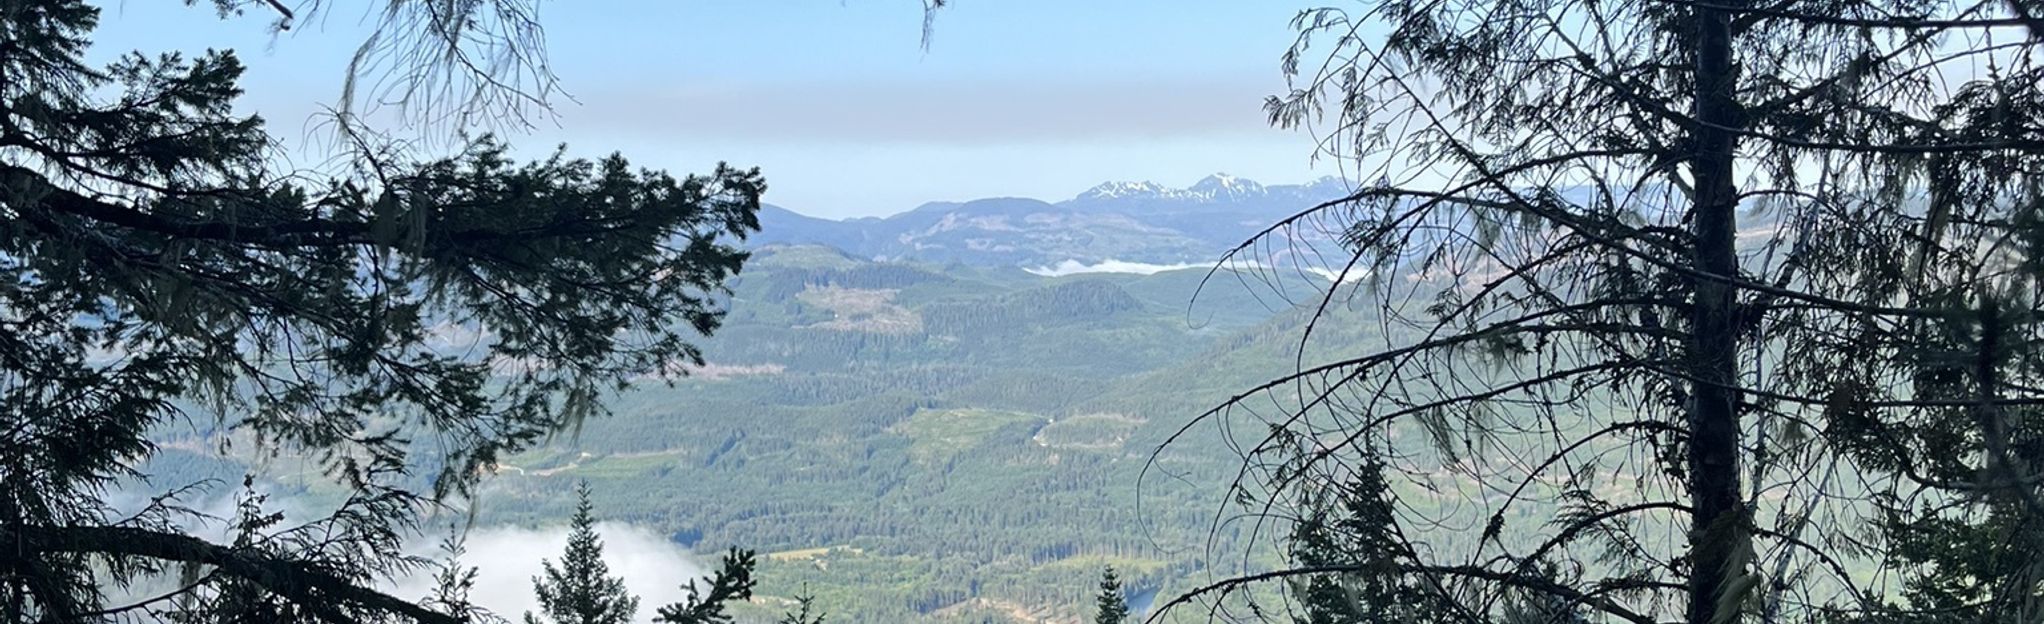 Kusam Klimb Trail, British Columbia, Canada 57 Reviews, Map AllTrails